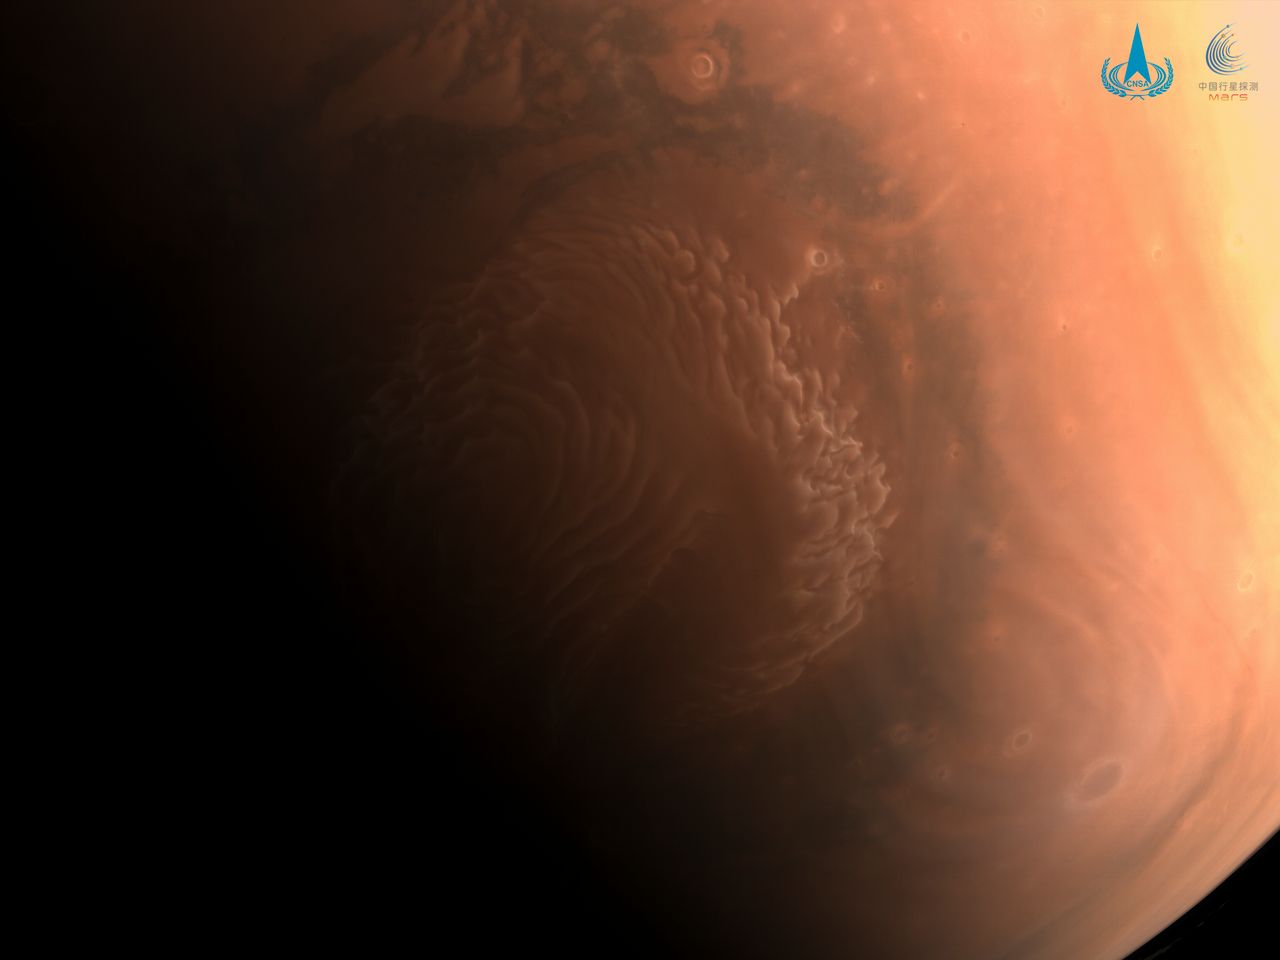 Chiny publikują pierwsze zdjęcia Marsa ze swojej sondy. Robi spore wrażenie!